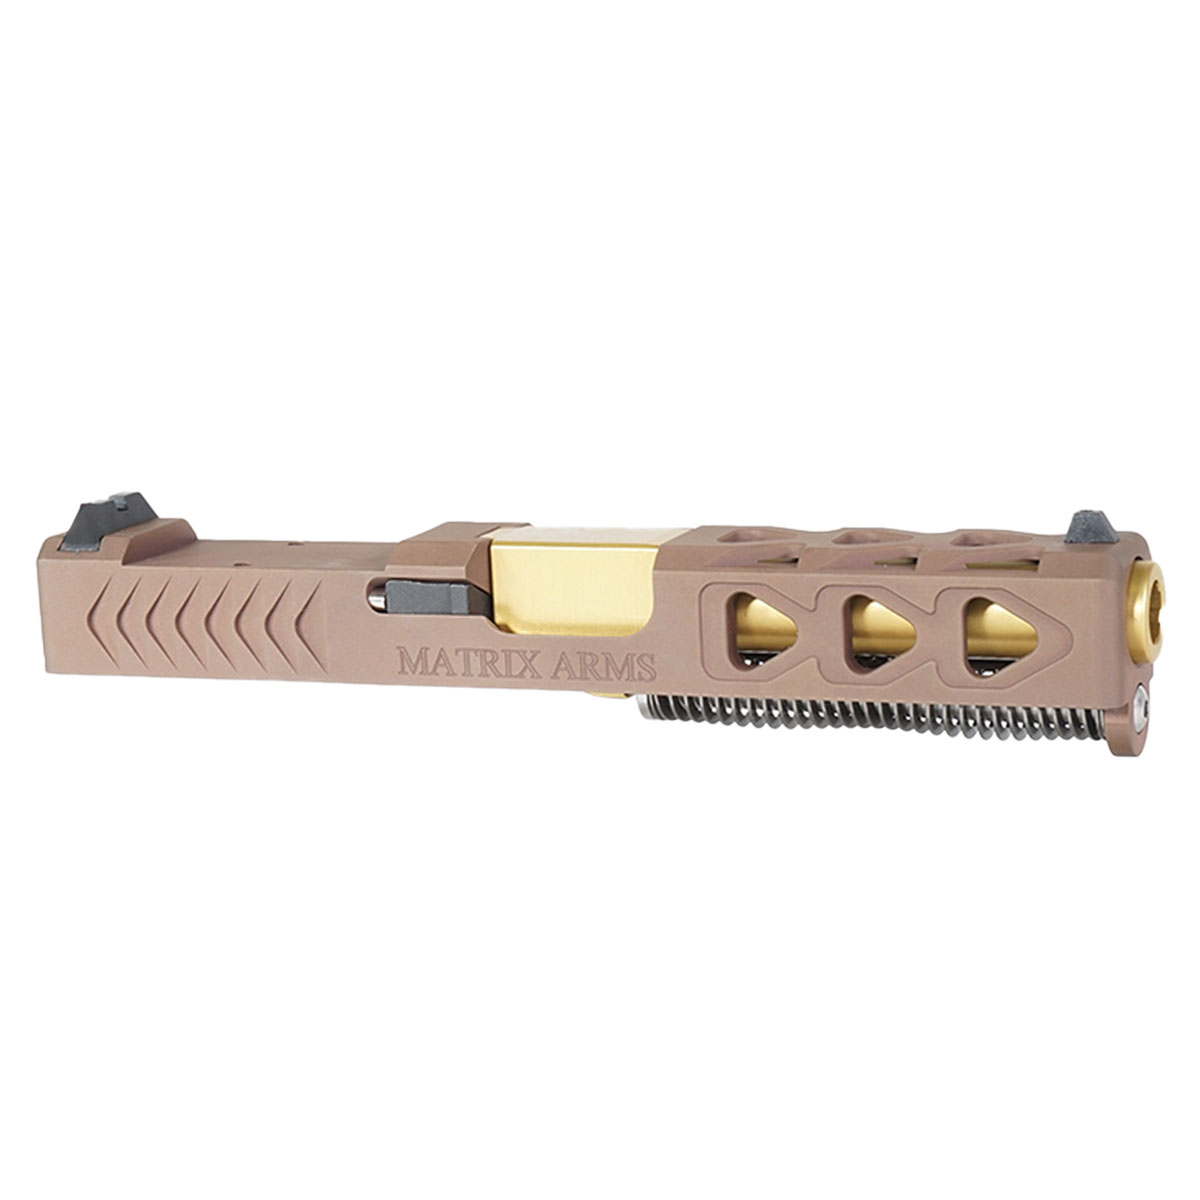 DDS 'Bellator Nidum' 9mm Complete Slide Kit - Glock 19 Gen 1-3 Compatible